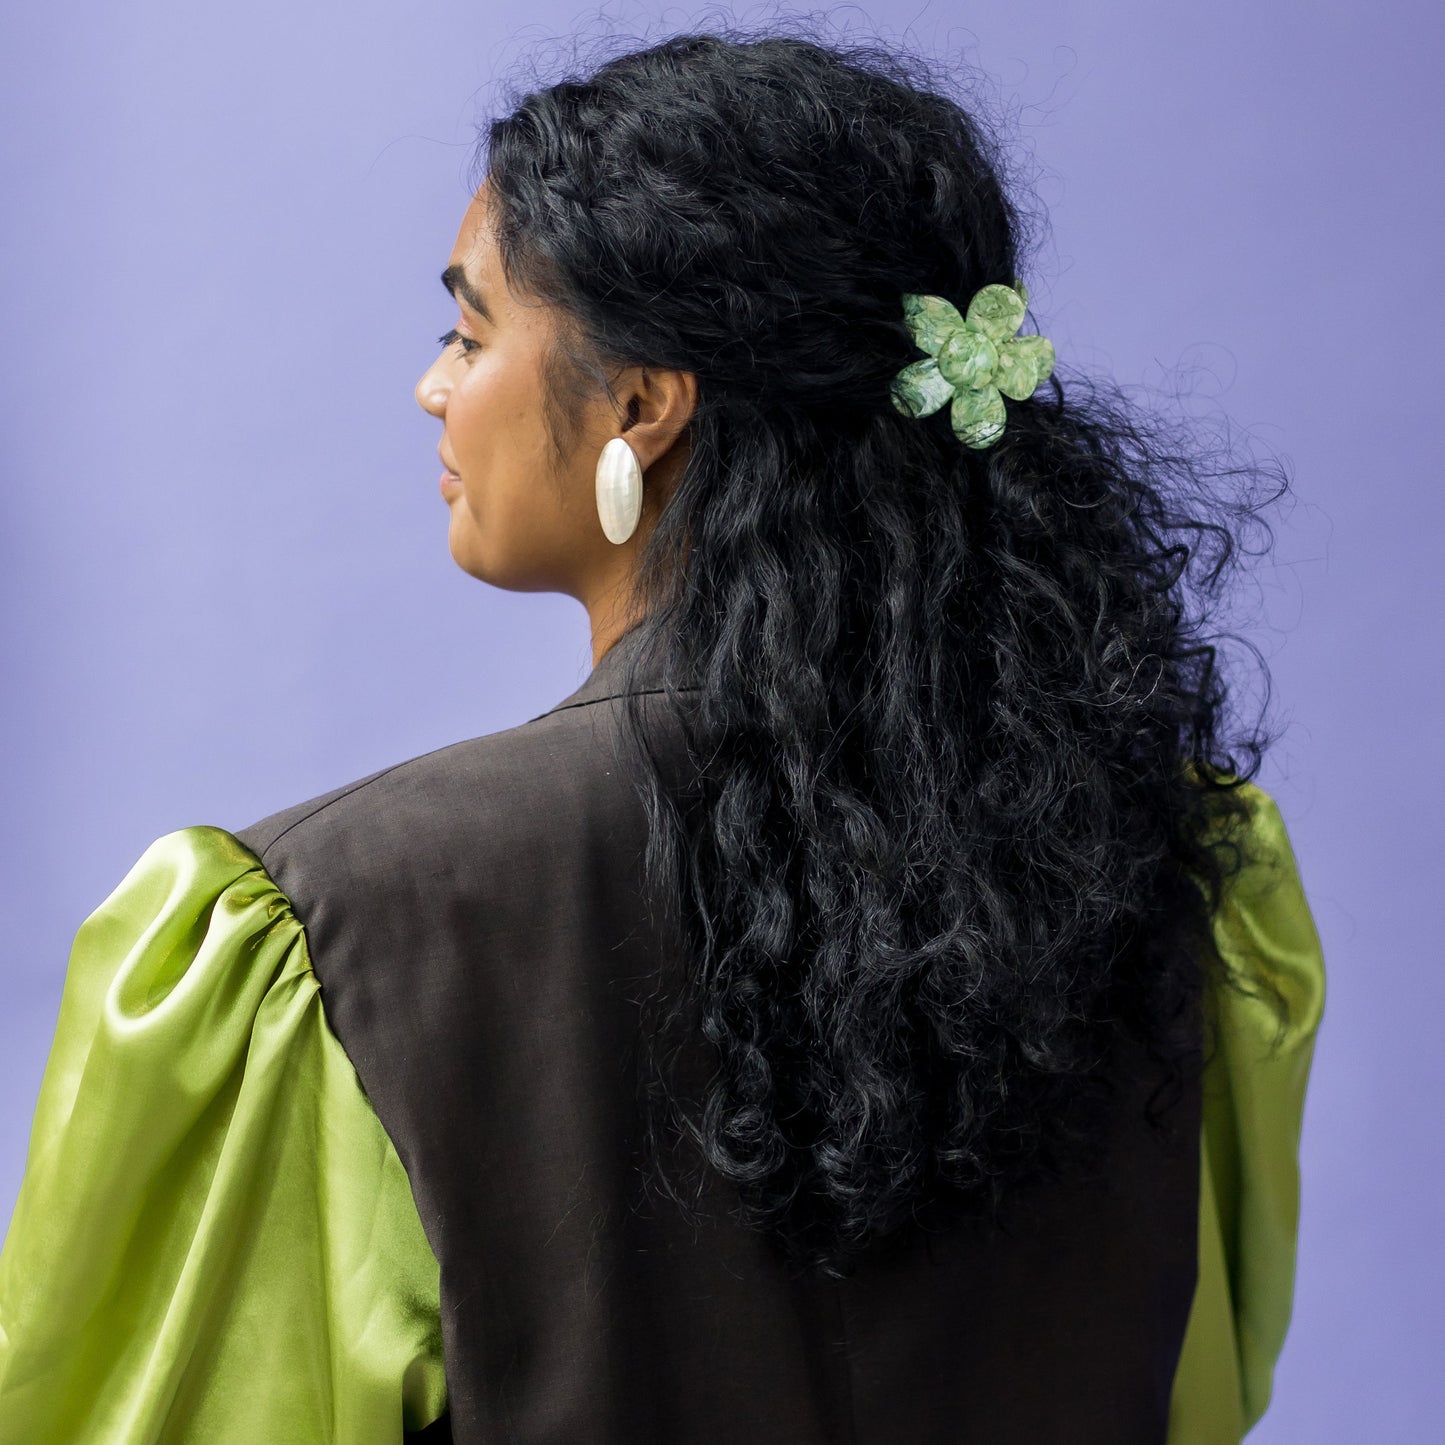 Haarspange Blume – Minze